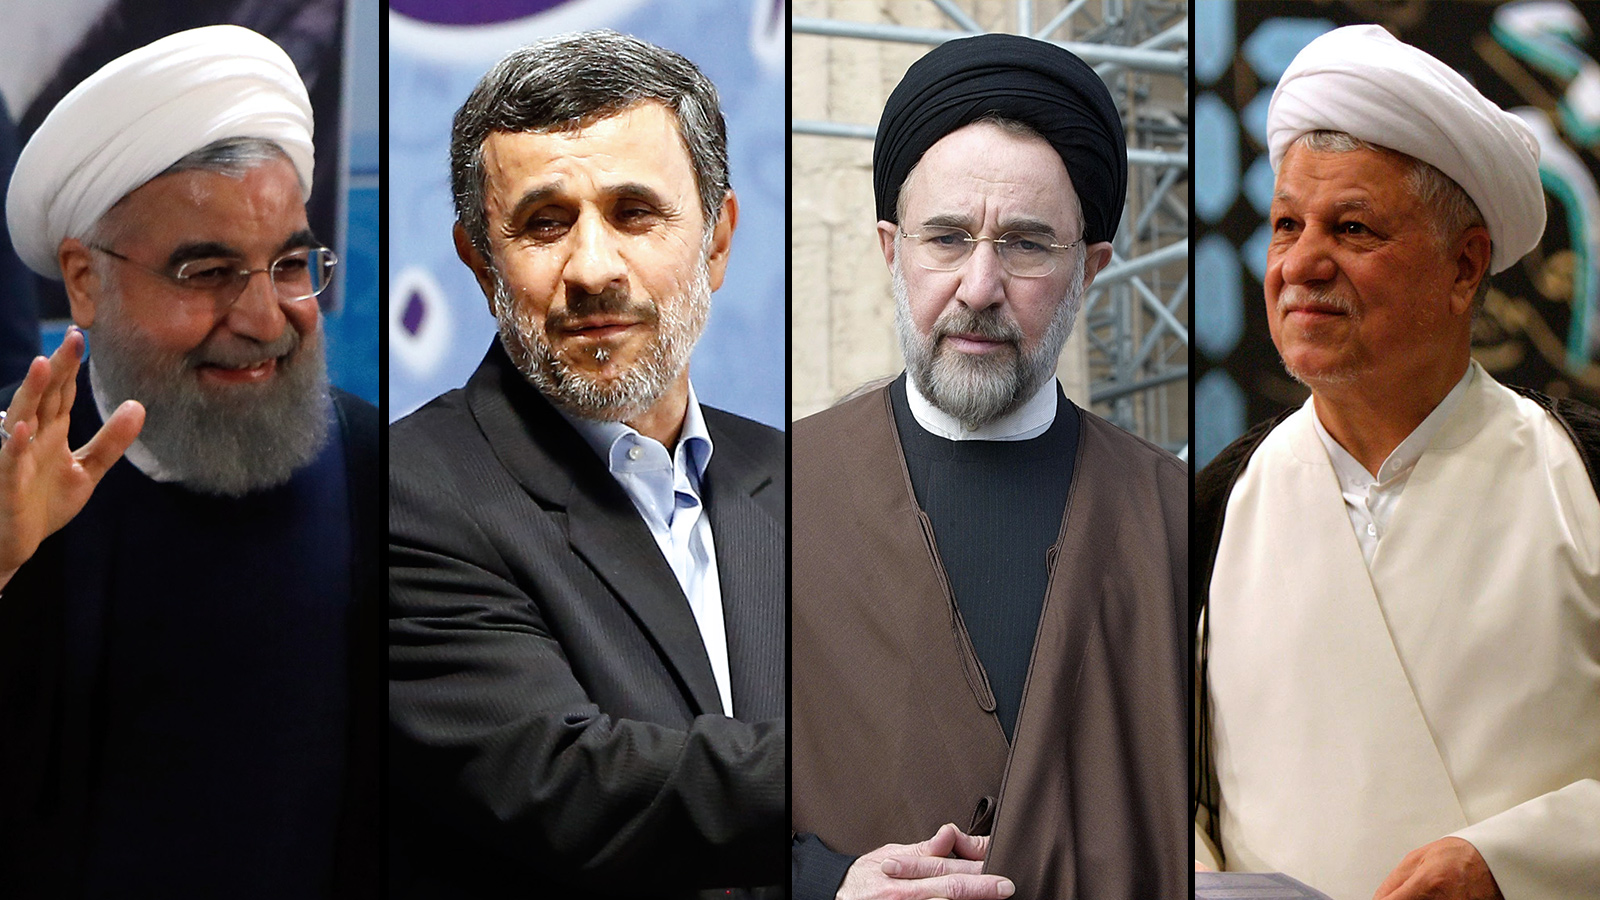  تجمع بعض رؤساء إيران وهم (من اليسار) حسن روحاني أحمد نجاد محمد خاتمي هاشمي رفسنجاني  (الأوروبية)